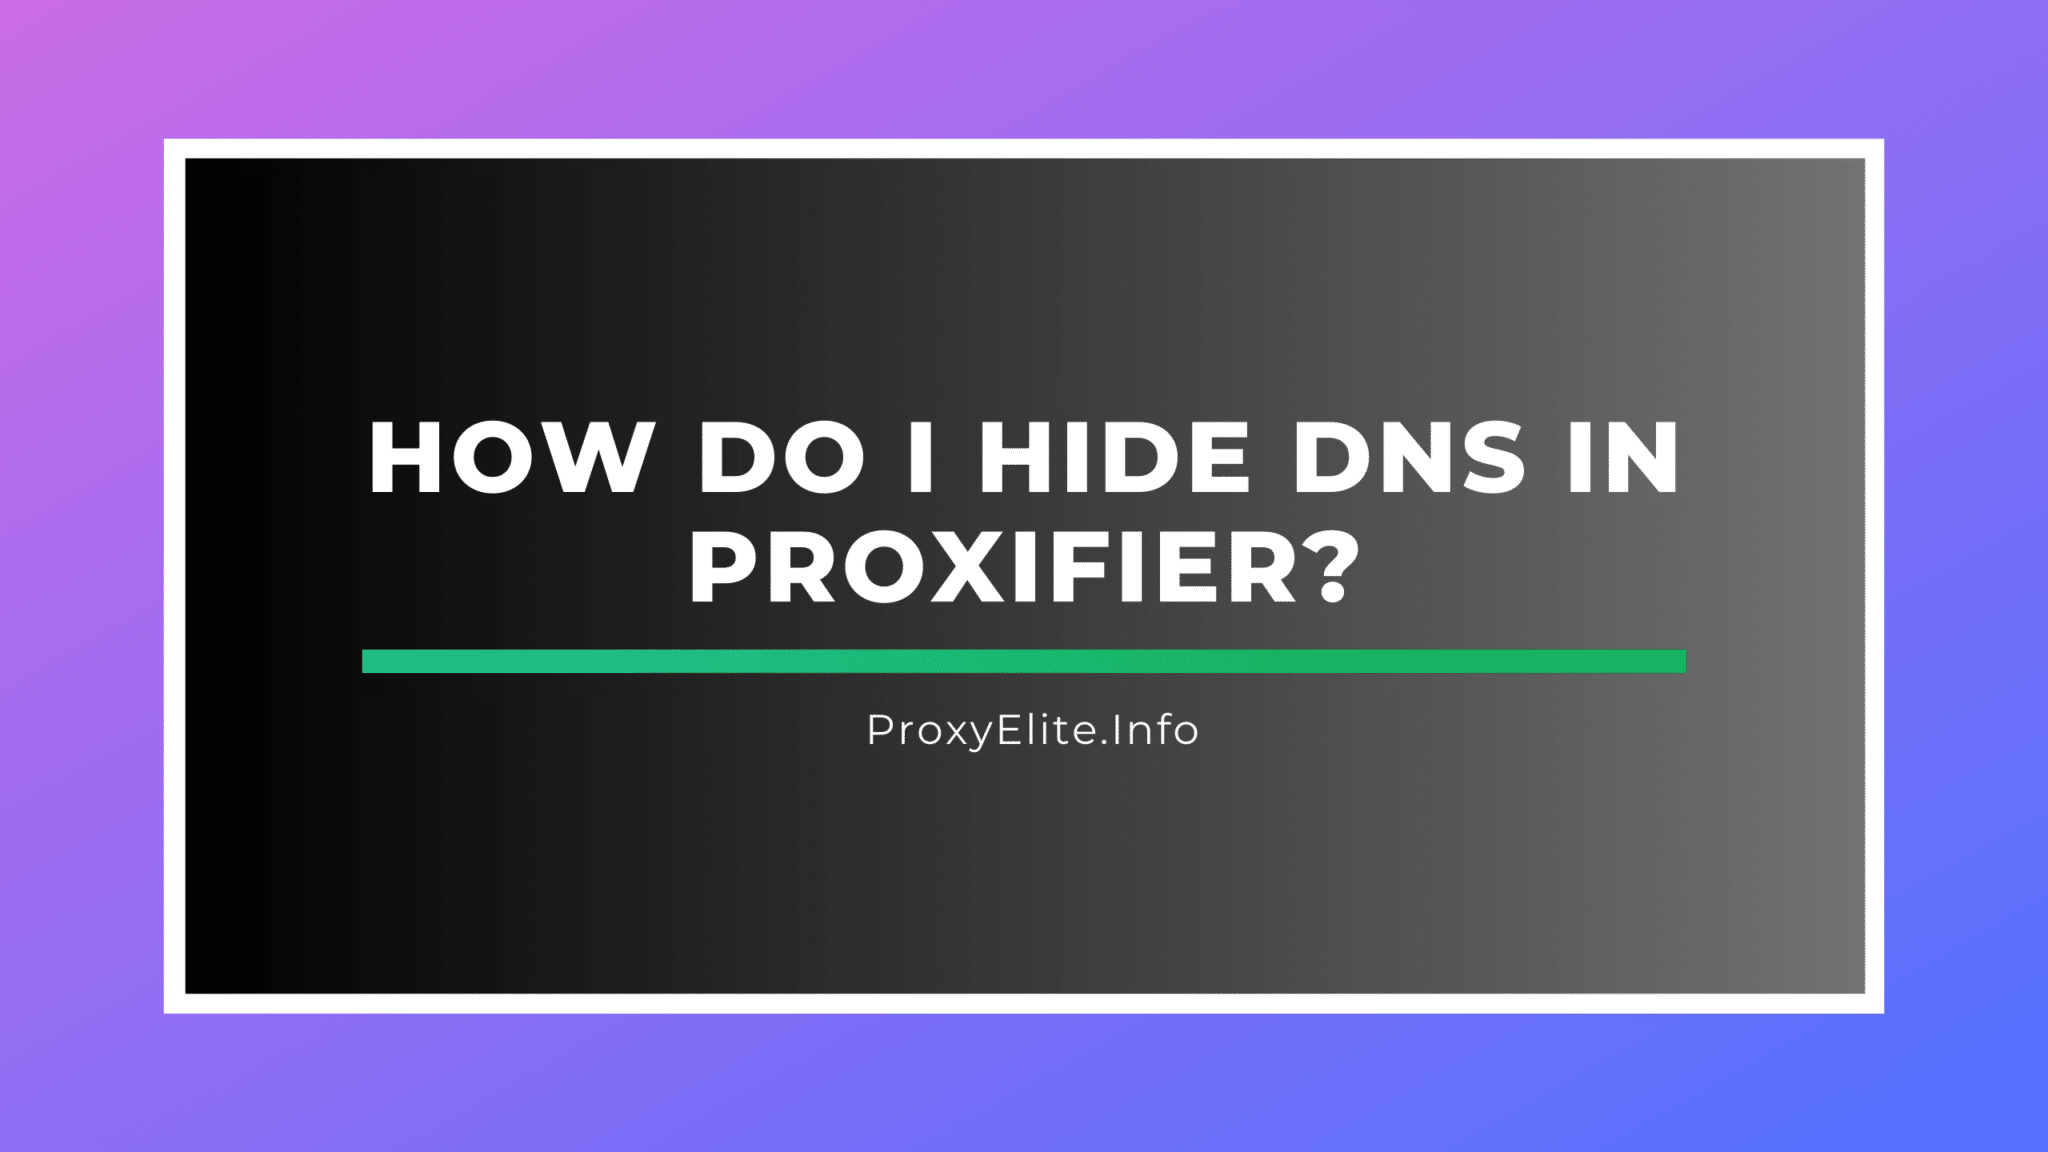 Como faço para ocultar o DNS no Proxifier?